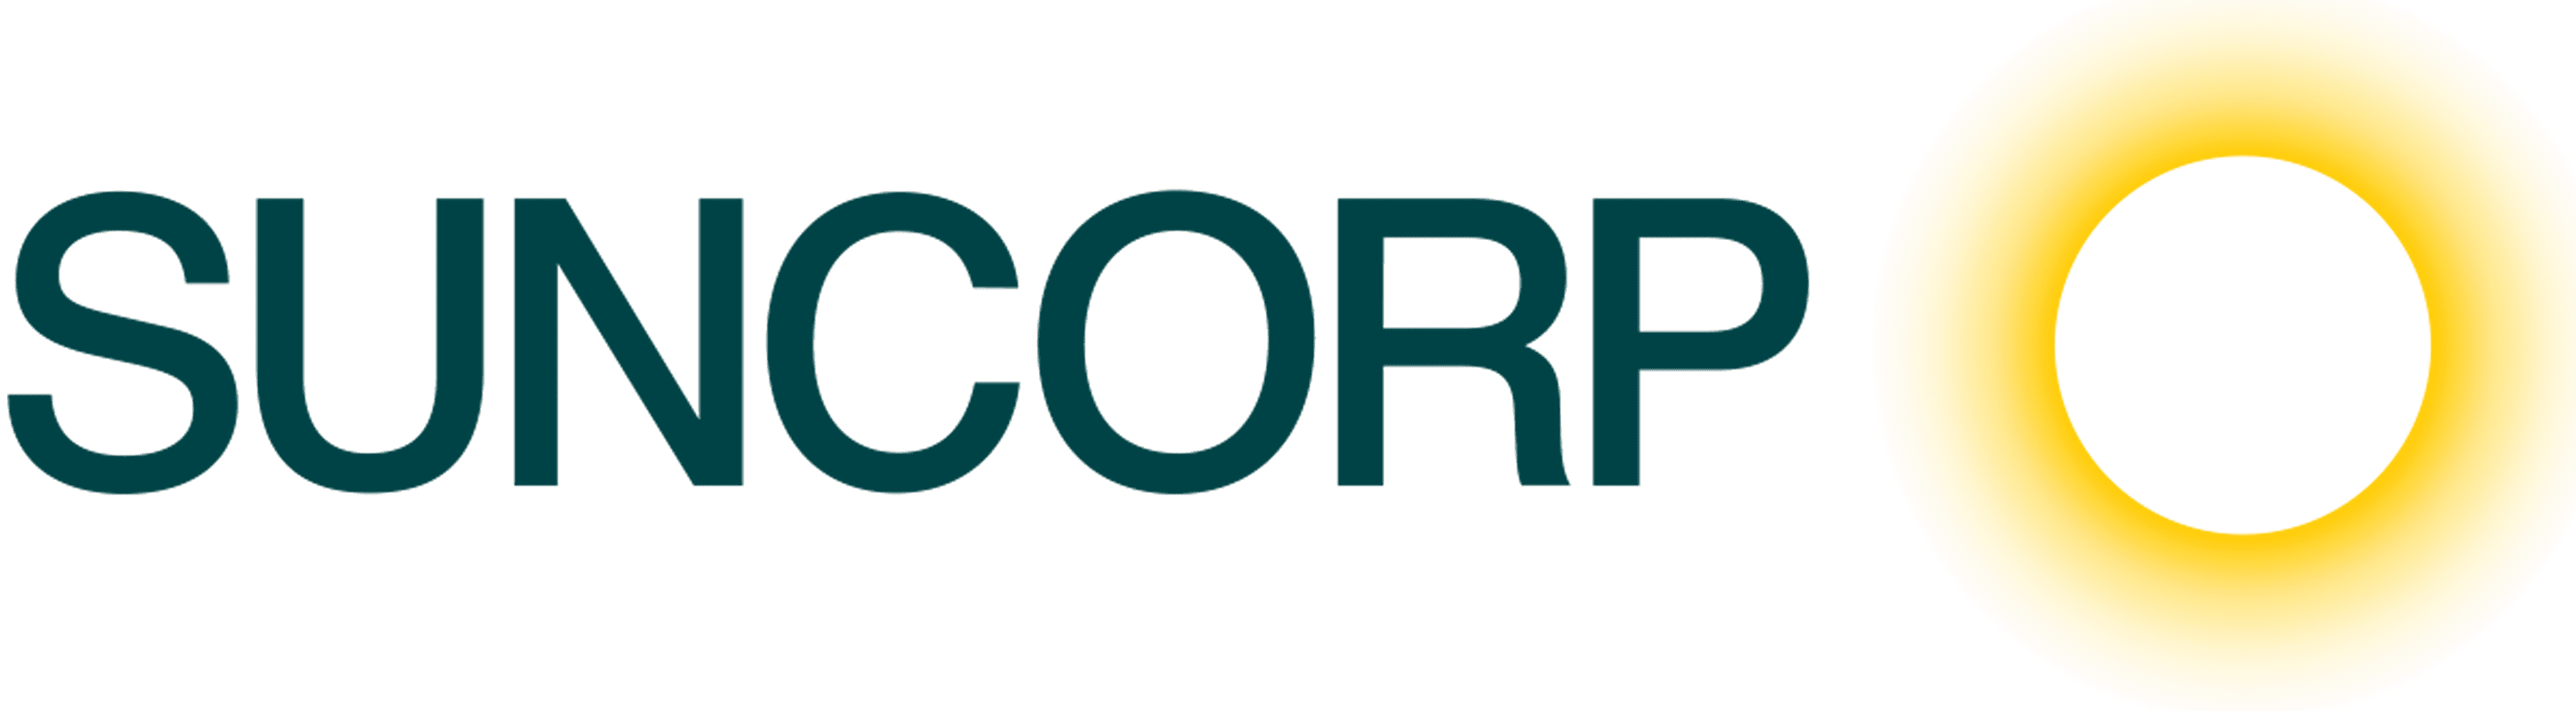 Suncorp-Bank-logo